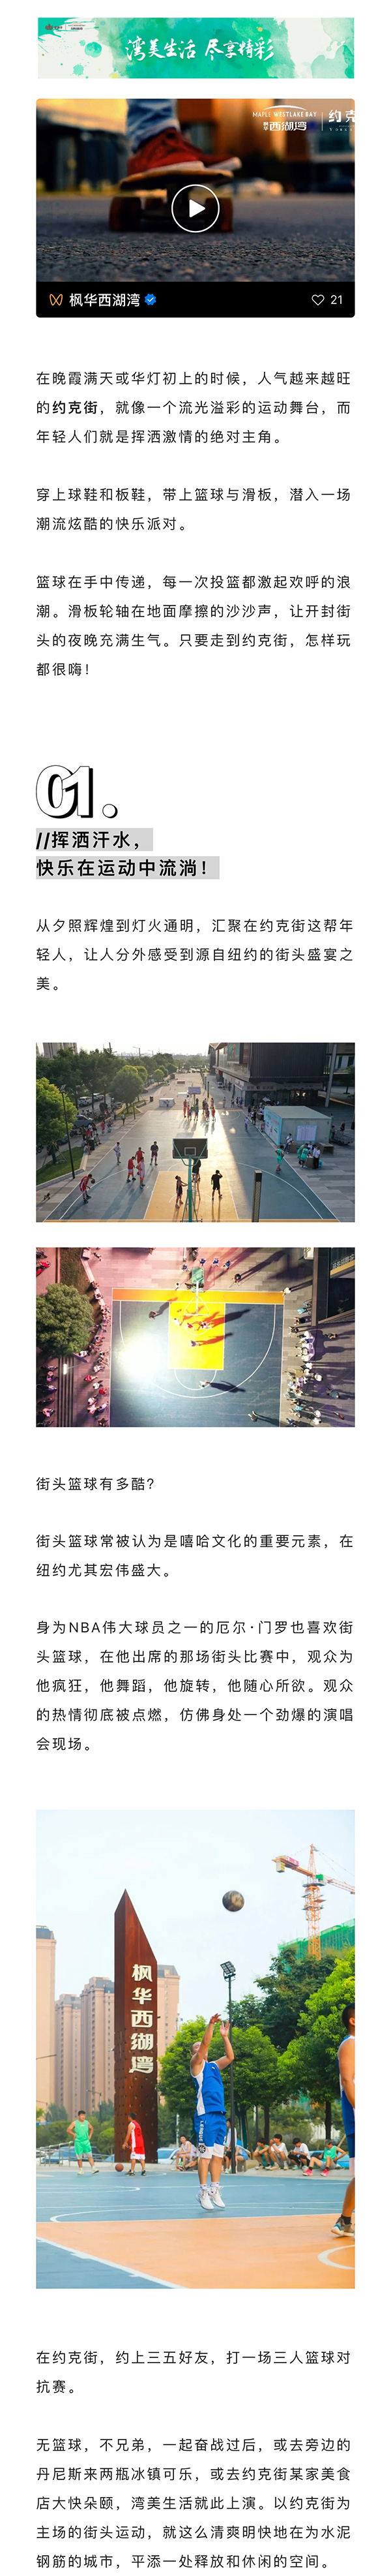 湾美生活--街头篮球，潮酷滑板，约克街刮起超炫运动风！_02.jpg